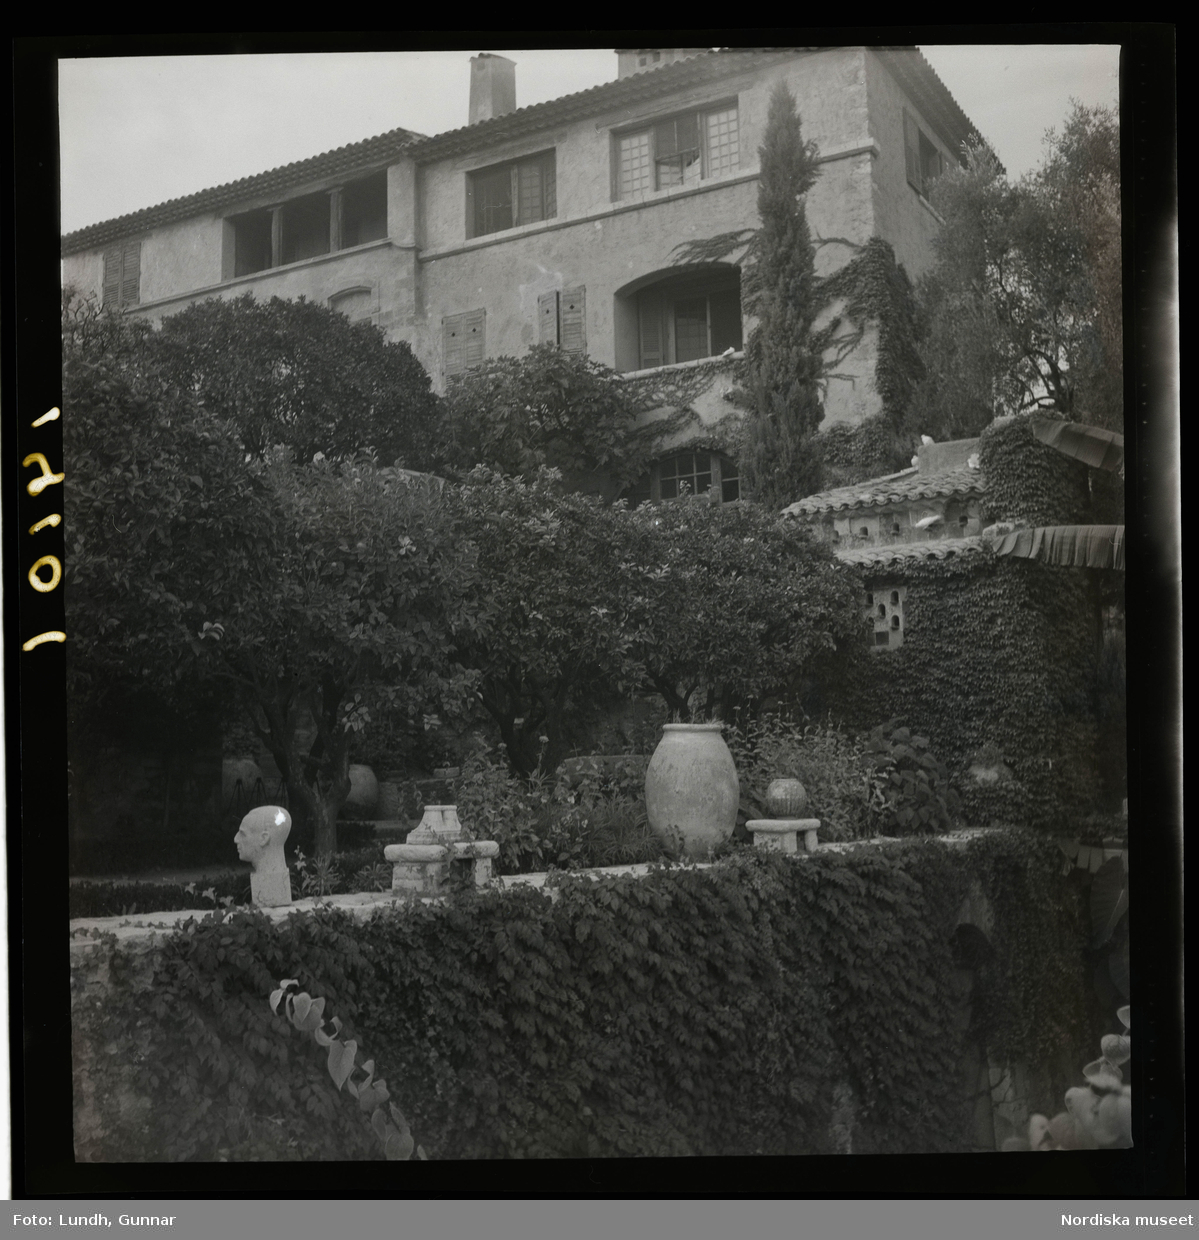 1950. Frankrike. Stenhus ovanför en mur med kruka